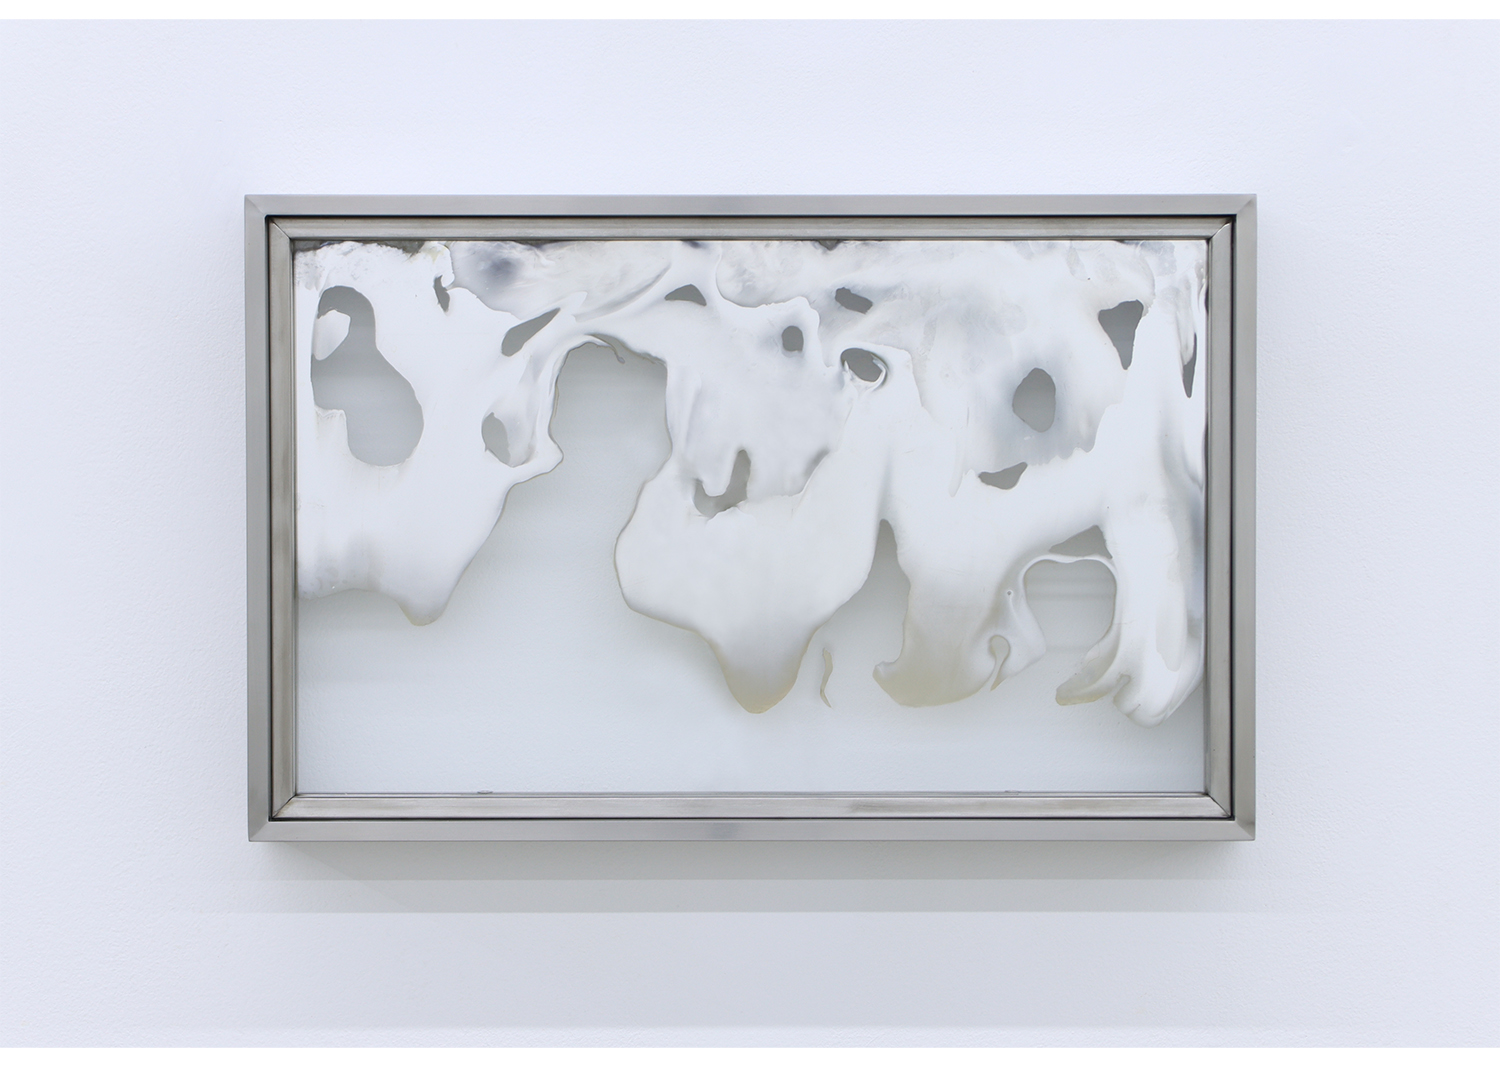 이미륵의 거울 (9)_2023_강화백유리에 은거울용액 반응, 스테인레스 스틸 프레임_48*31*6cm@Mirrors for Mirok Li (9) 2021_Silver glass reaction on tempered transparent glass, stainless steel frame, 48×31×6 cm